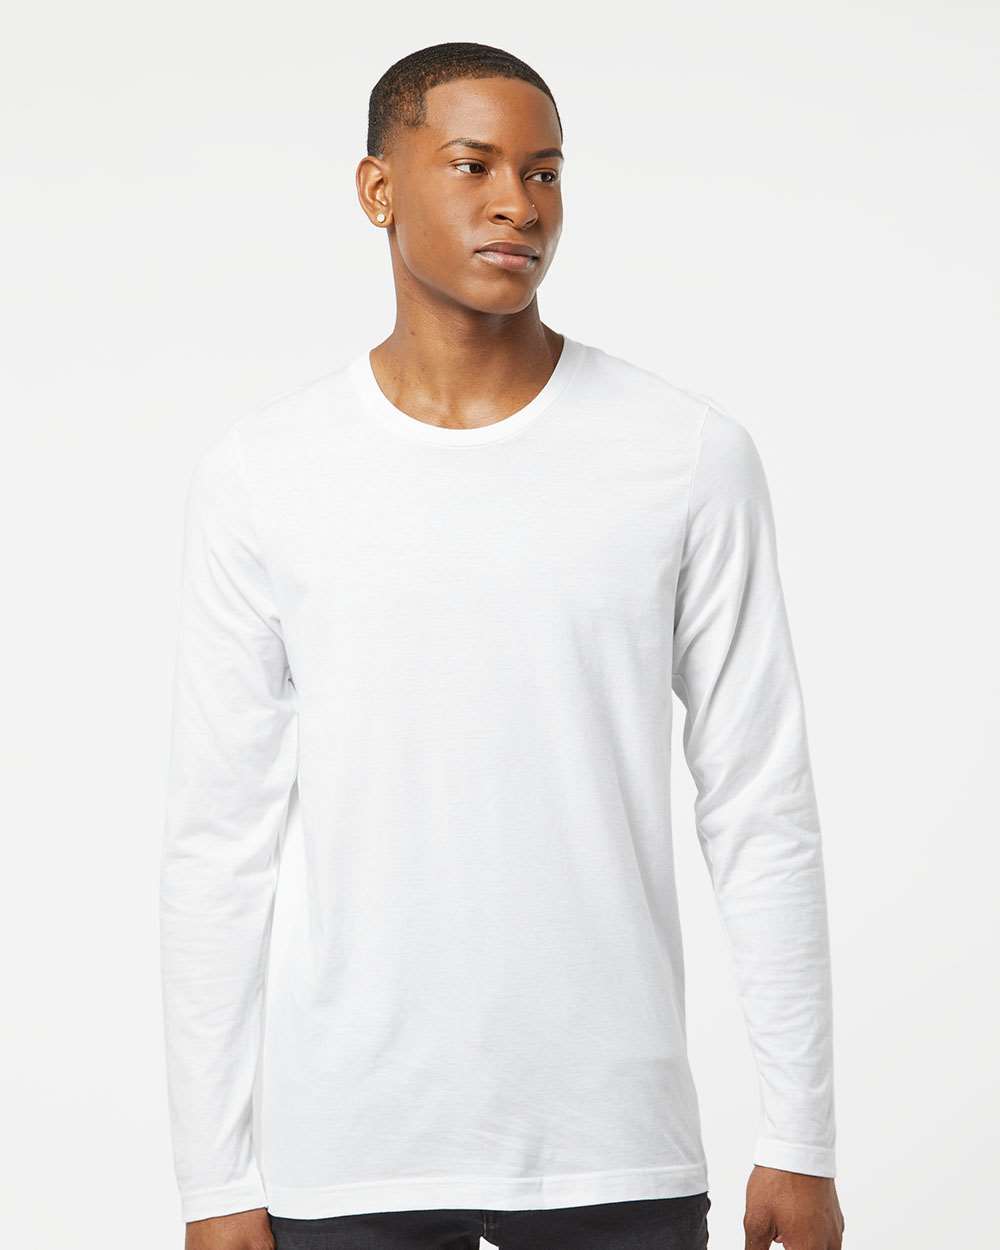 mens tshirts Unisex Premium Cotton Long Sleeve T-Shirt